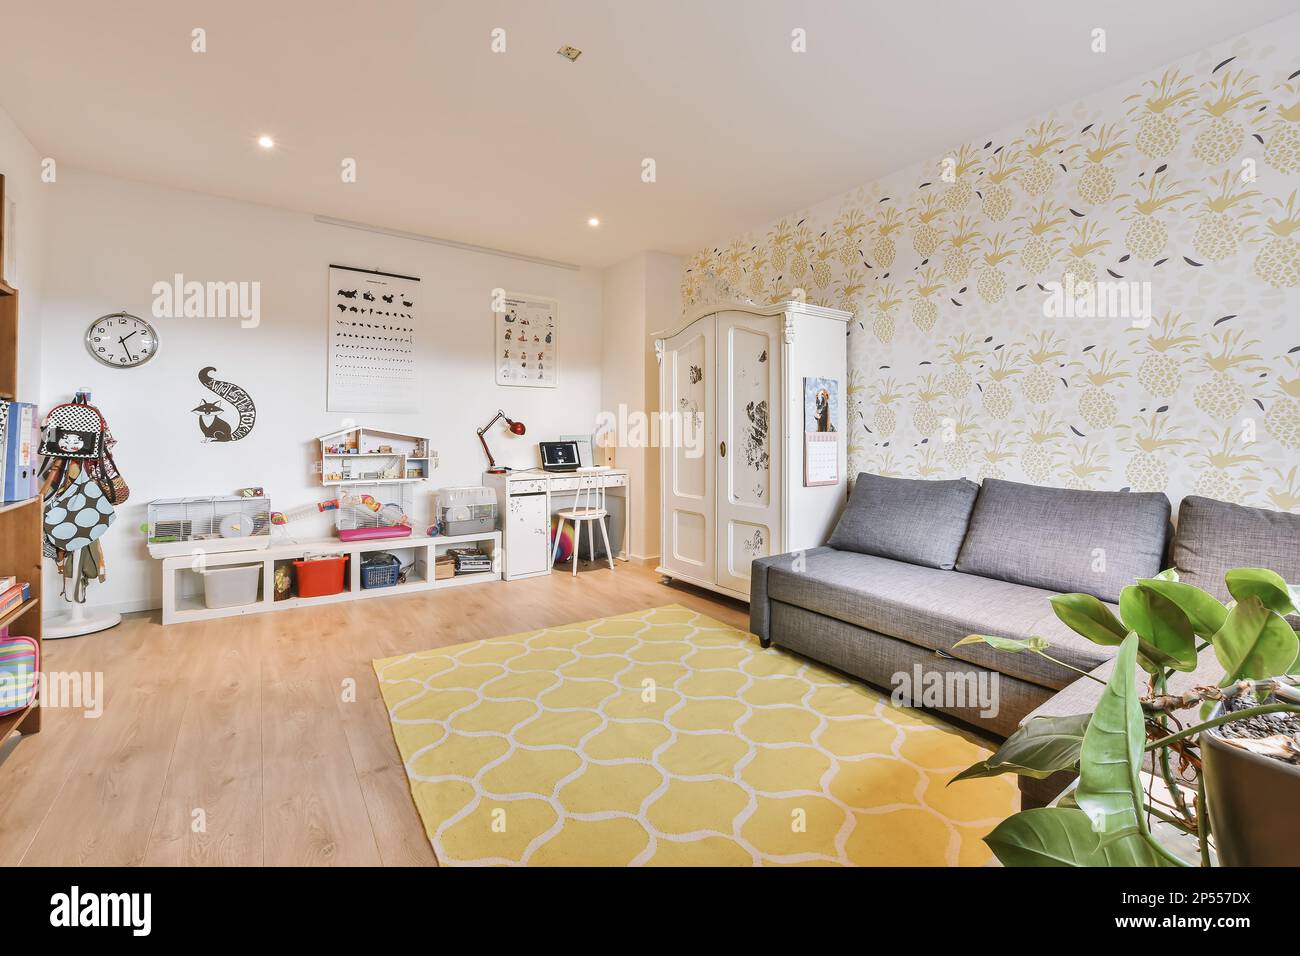 Amsterdam, Niederlande - 10. April 2021: Ein Wohnzimmer mit gelb-weißen Tapeten an den Wänden, eine graue Couch und ein graues Sofa Stockfoto